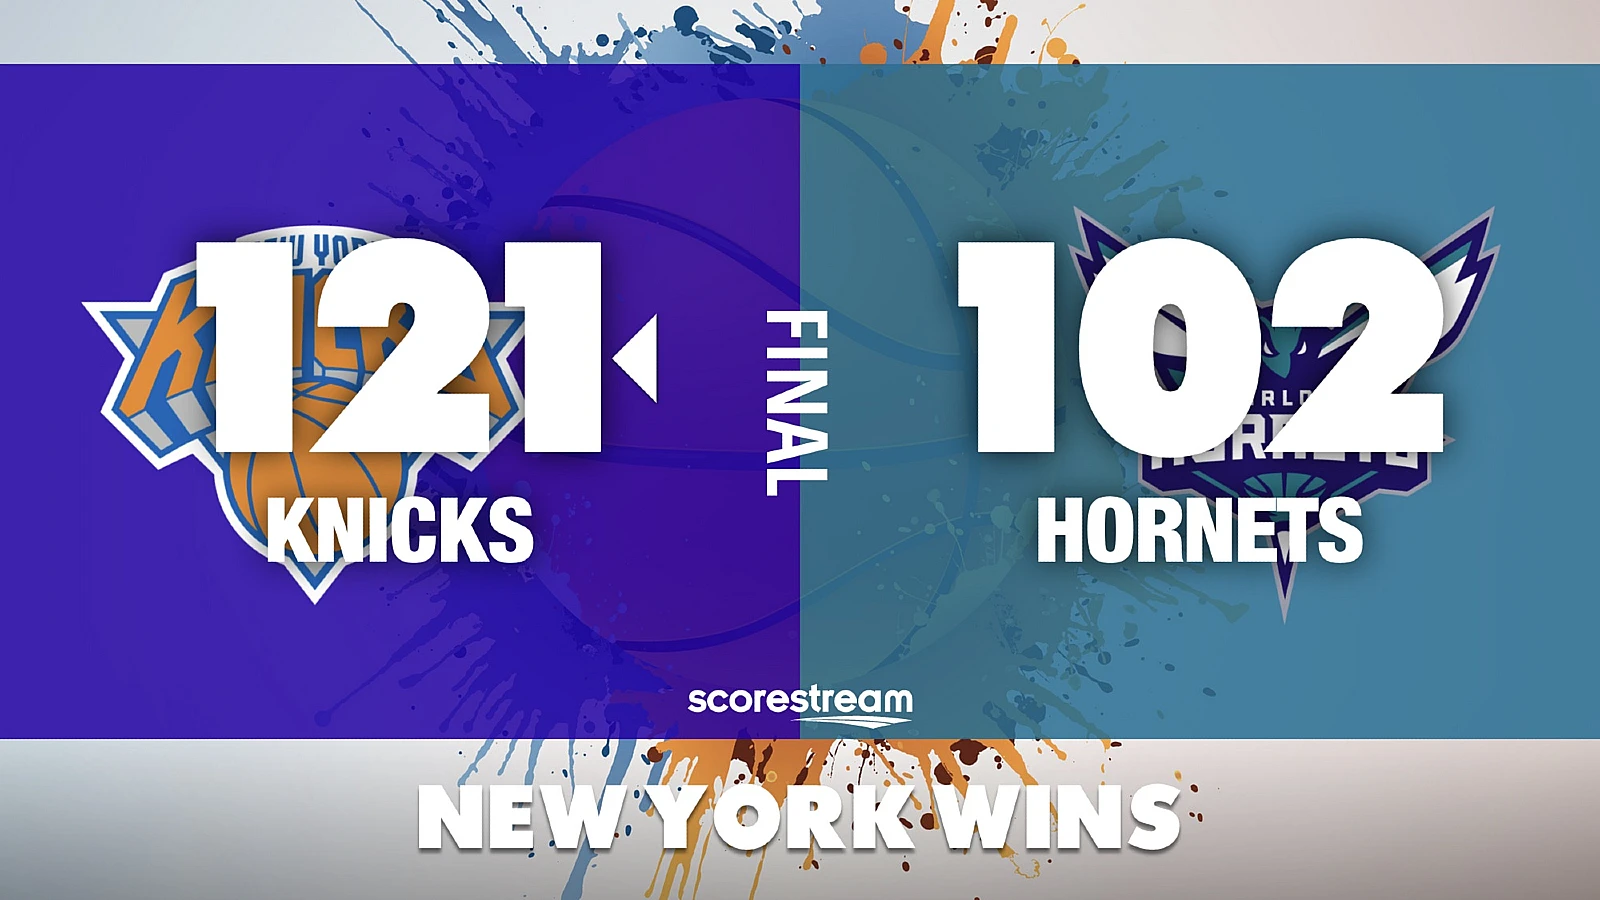 New York Knicks vs Charlotte Hornets NBA results